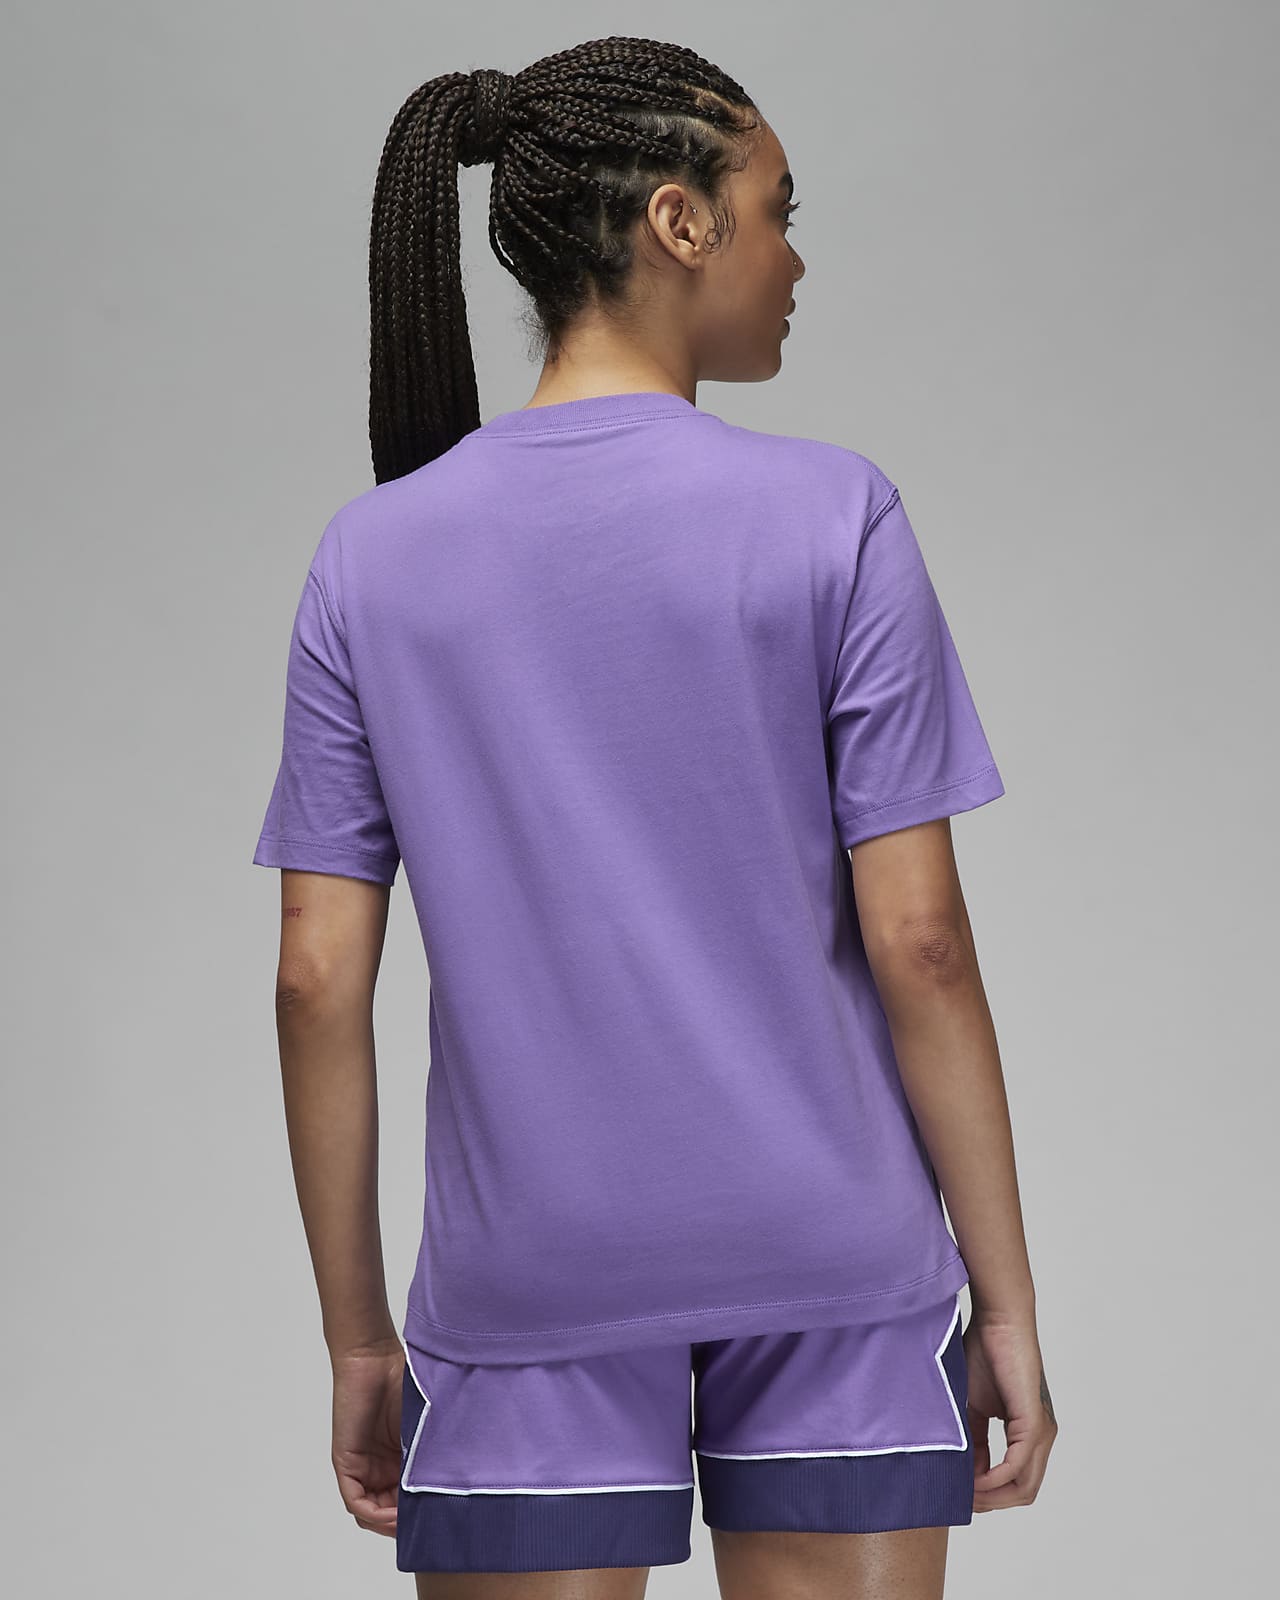 Jordan Women's T-Shirt. Nike LU